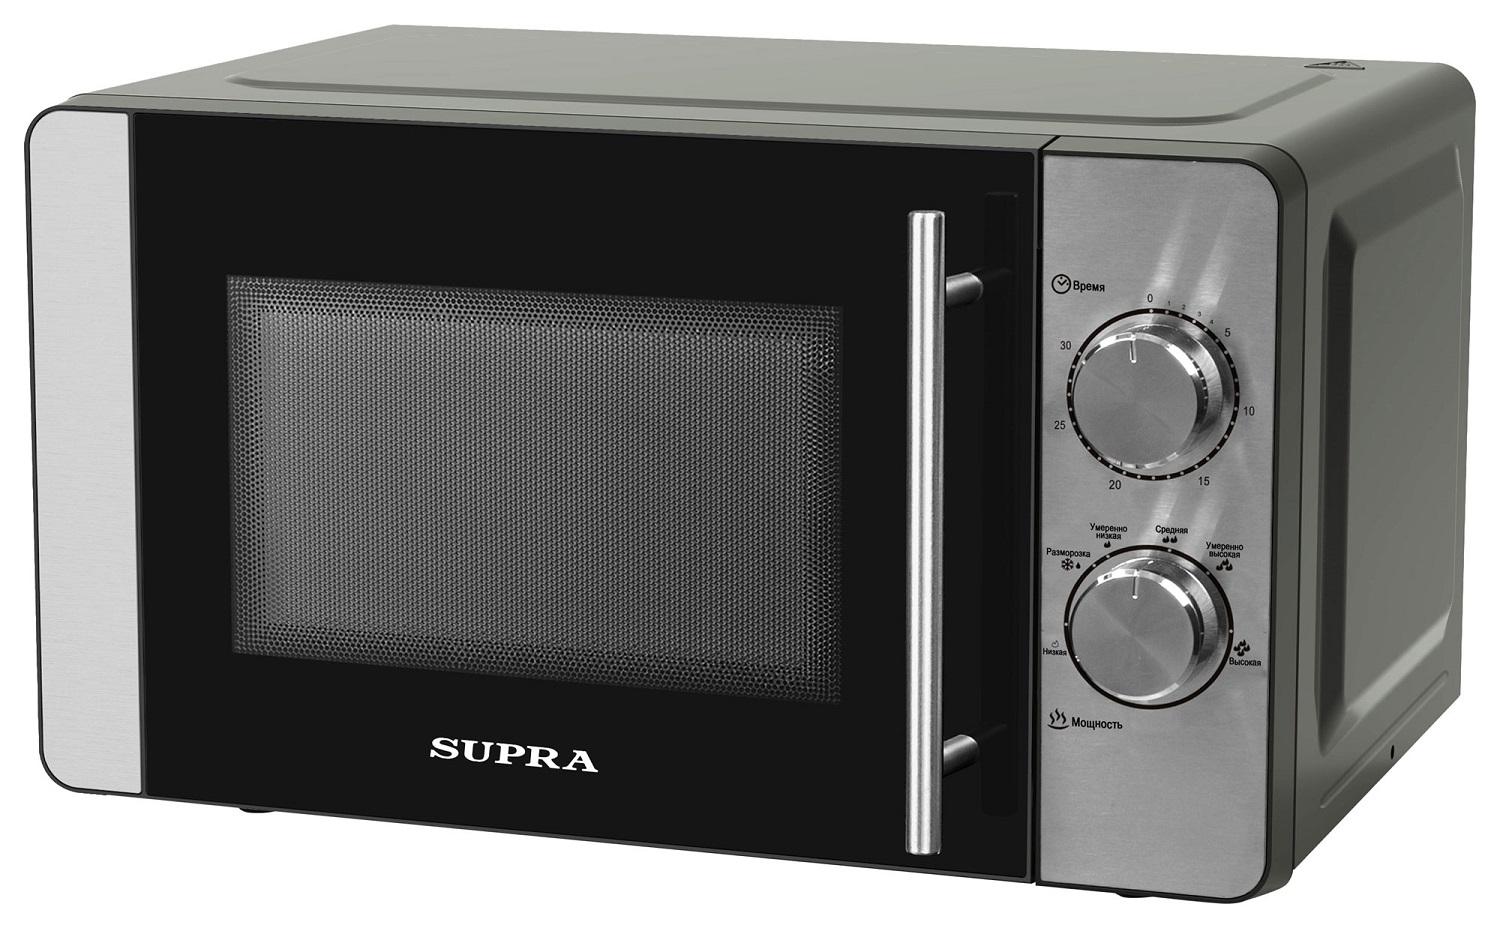 Микроволновая печь Supra 20MS22 серый